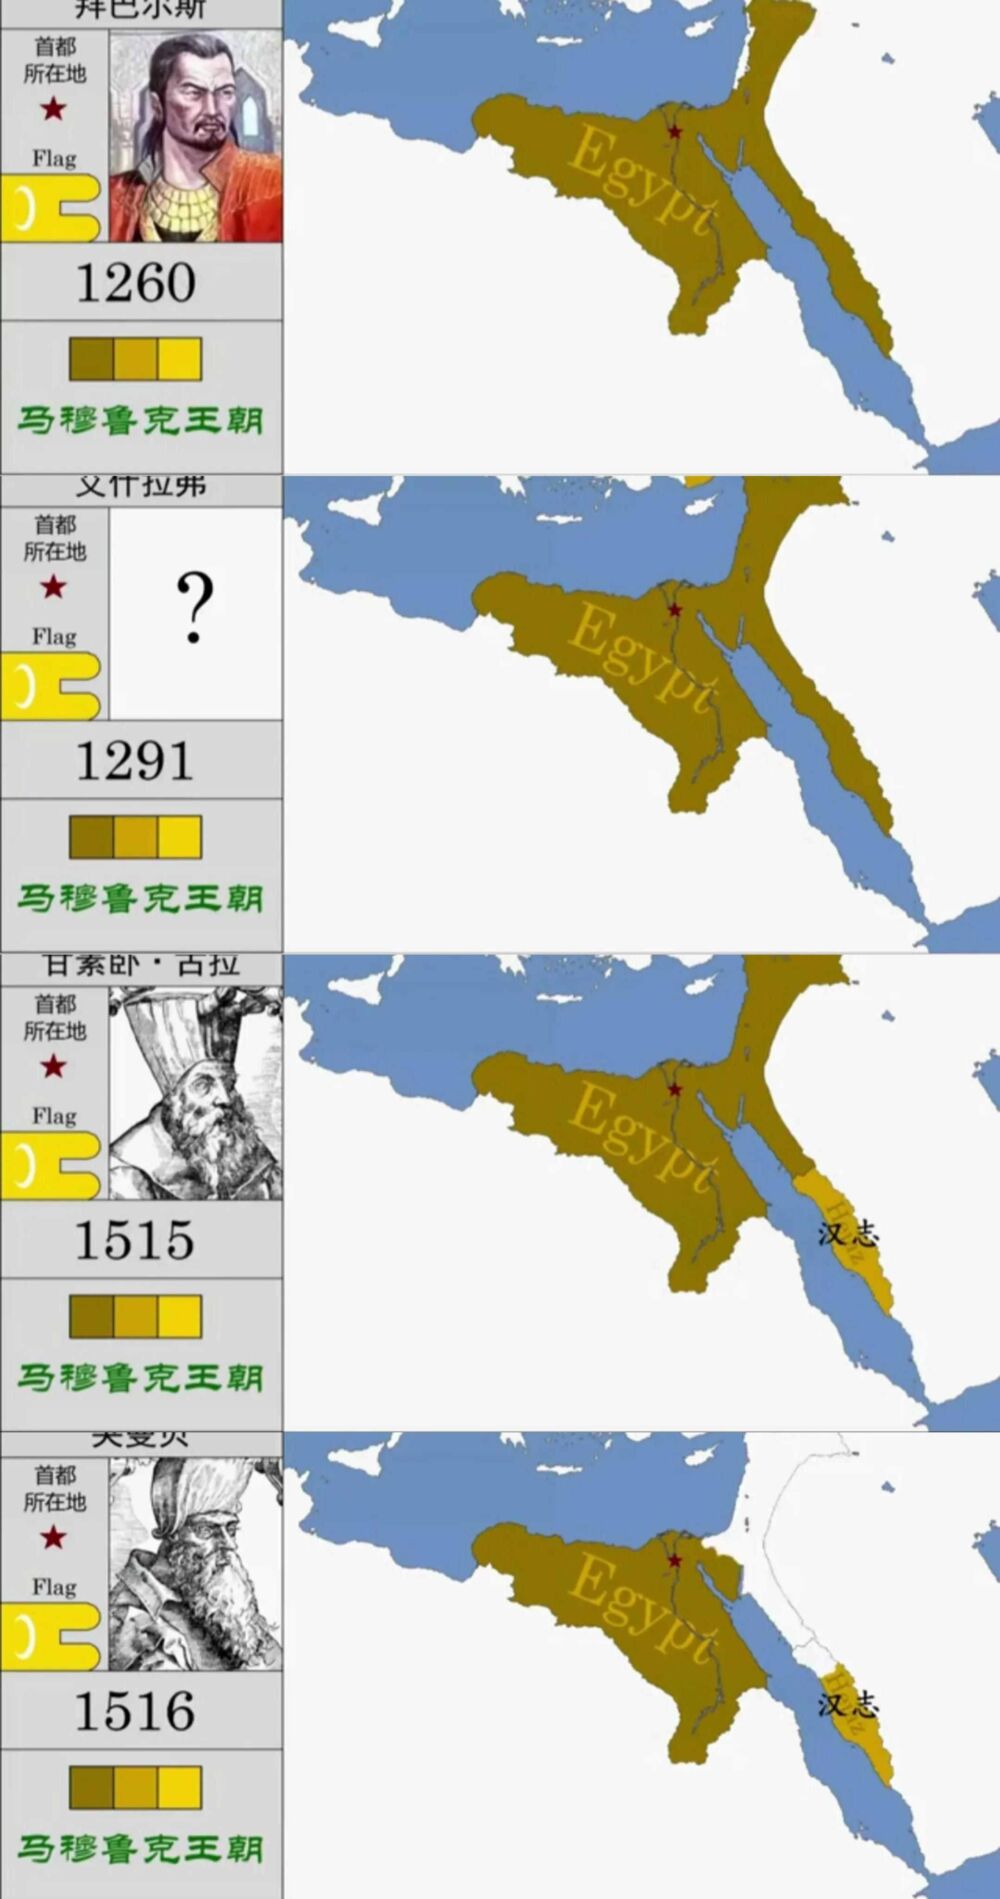 从地图上知历史:罗马帝国统治巴勒斯坦地区700年，比其他国家都久